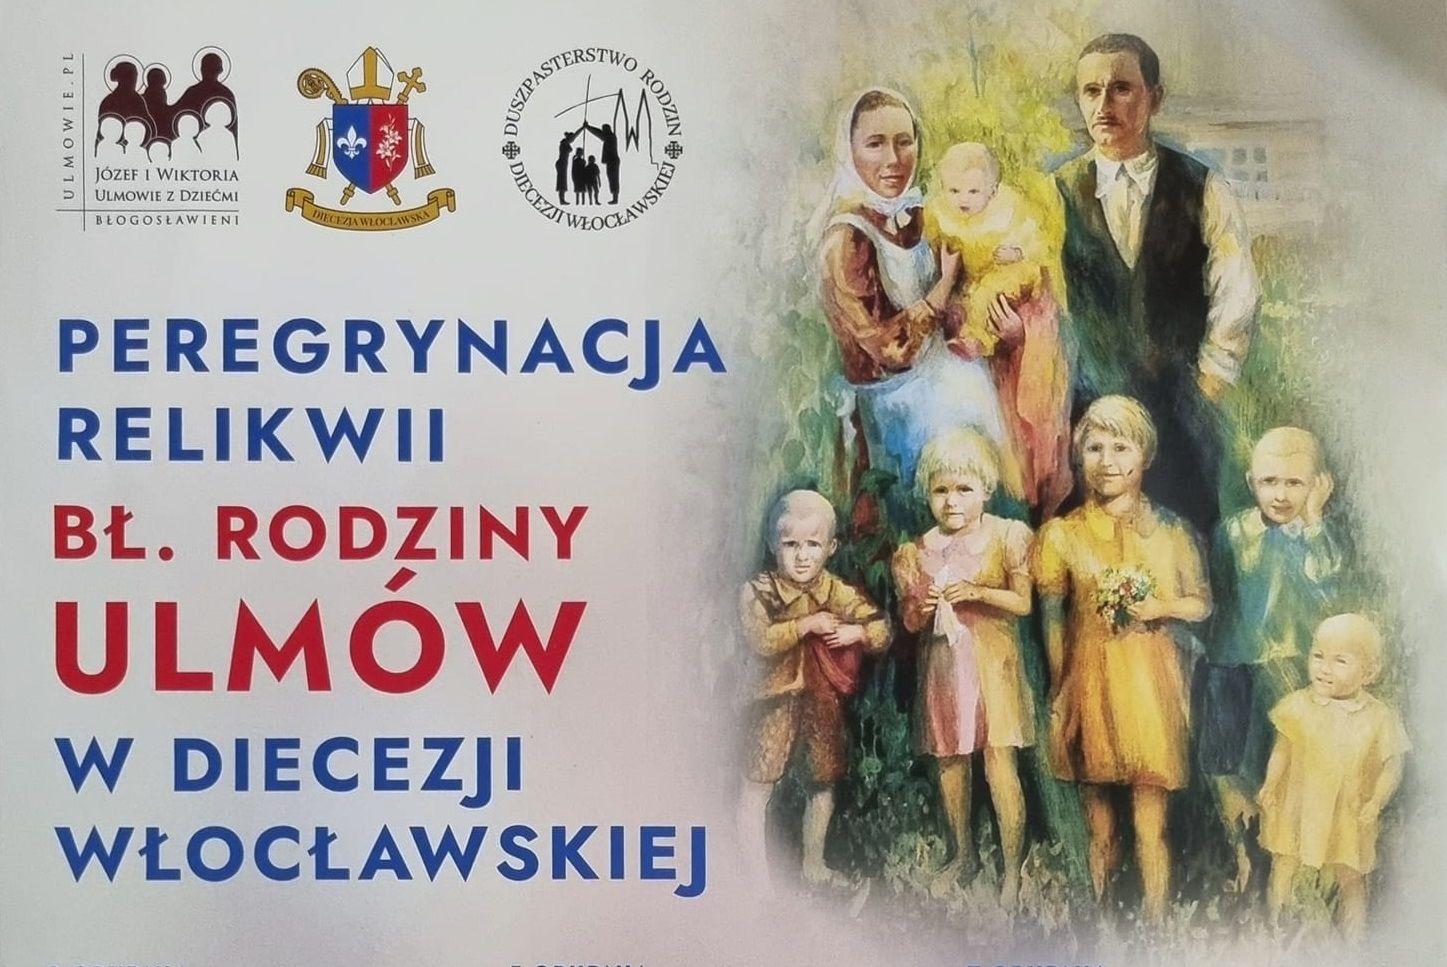 Peregrynacja relikwii błogosławionej rodziny Ulmów w diecezji włocławskiej (program)